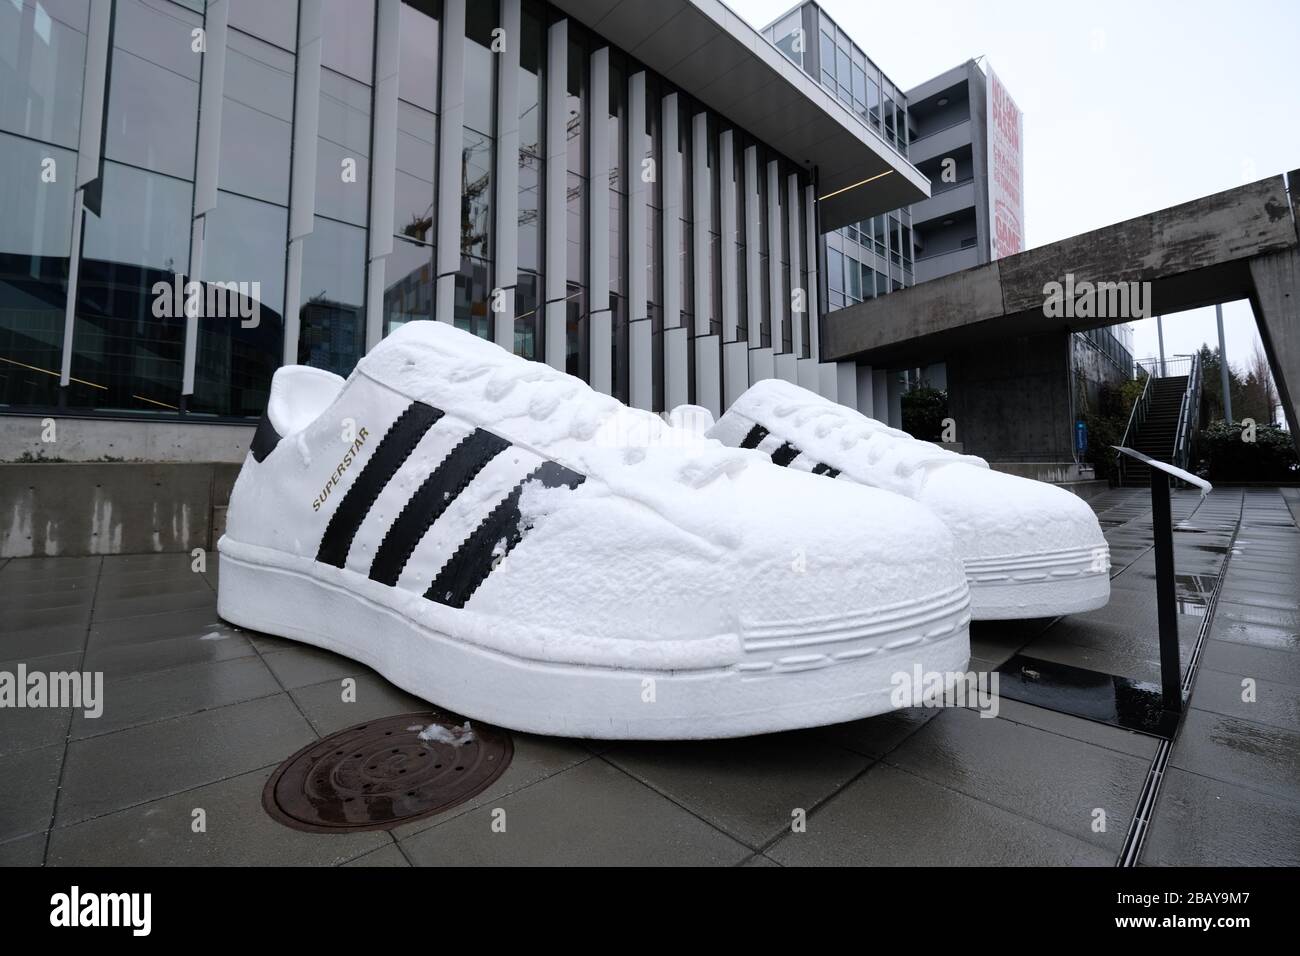 Portland, États-Unis. 14 mars 2020. Un modèle géant de chaussures Superstar  photographié au siège nord-américain d'Adidas à Portland, en Oregon, le 14  mars 2020. La compagnie allemande de chaussures a fermé tous